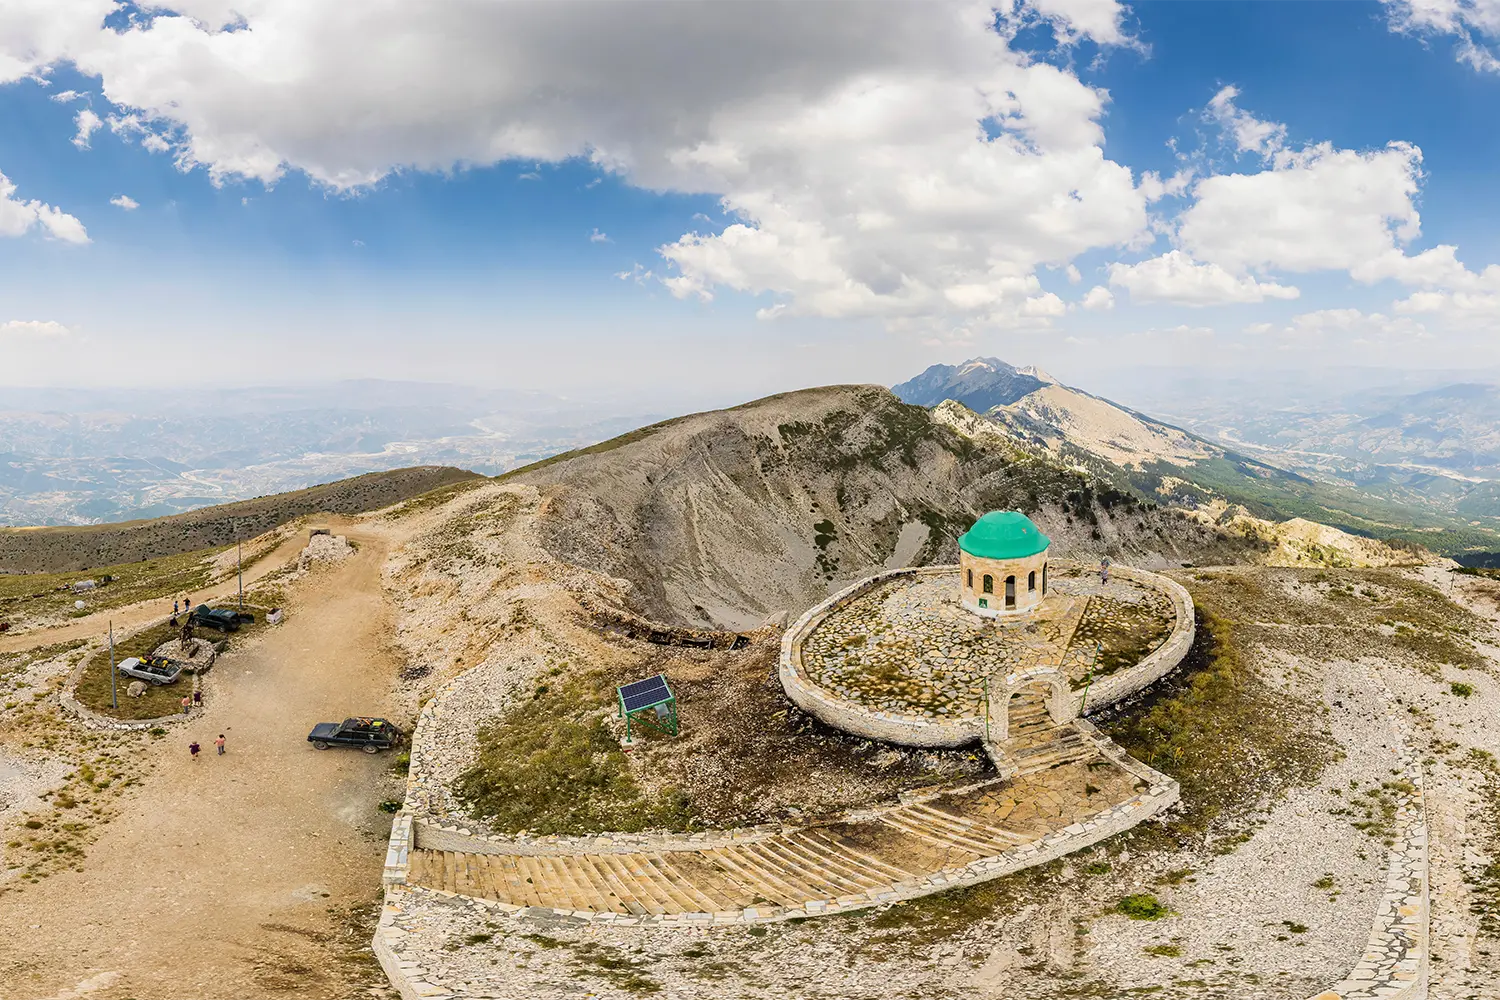 Όρος Tomorr στο εθνικό πάρκο Tomorr με τη λάρνακα (tyrbe) του Abbas ibn Ali στην κορυφή στο καλοκαίρι, Αλβανία